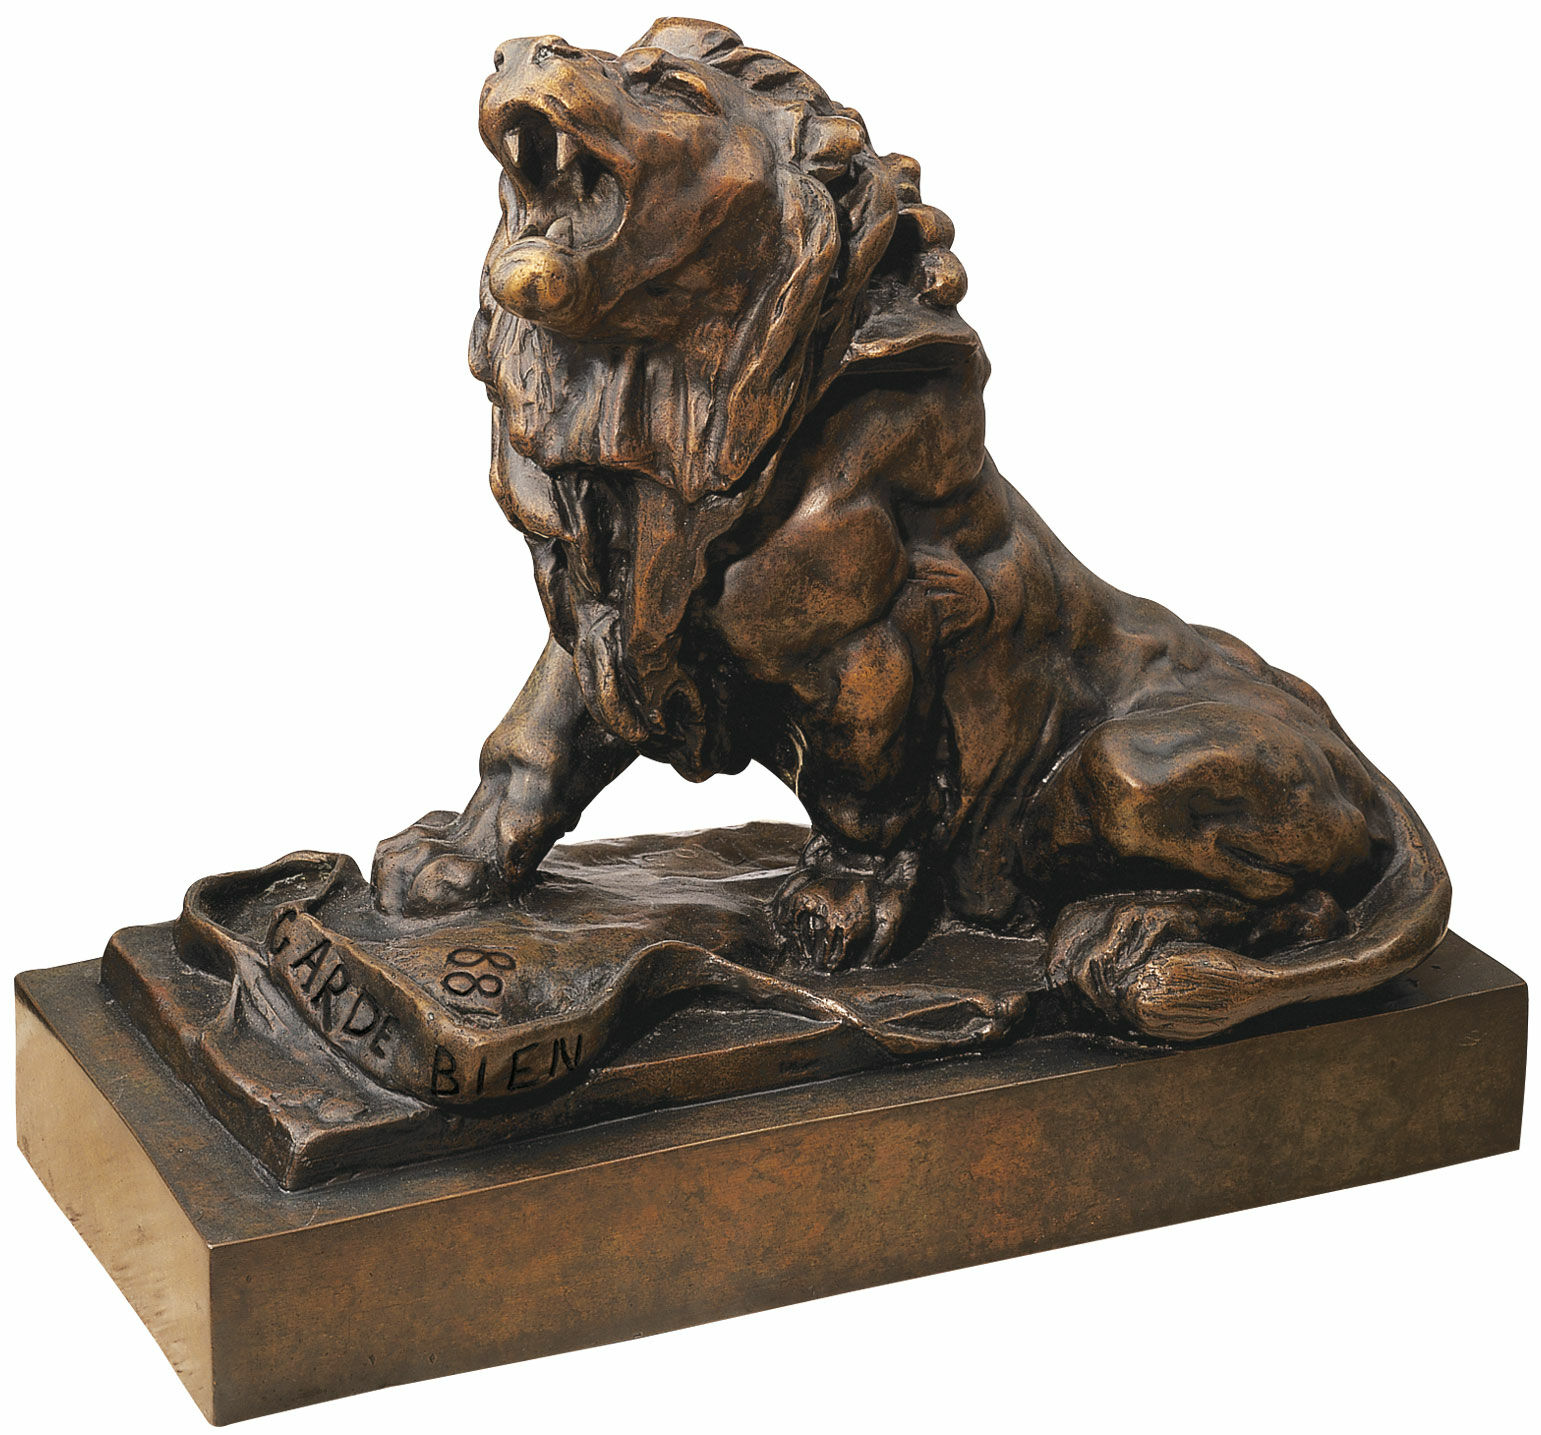 Sculpture "The Weeping Lion" (Le lion qui pleure), bronze version by Auguste Rodin